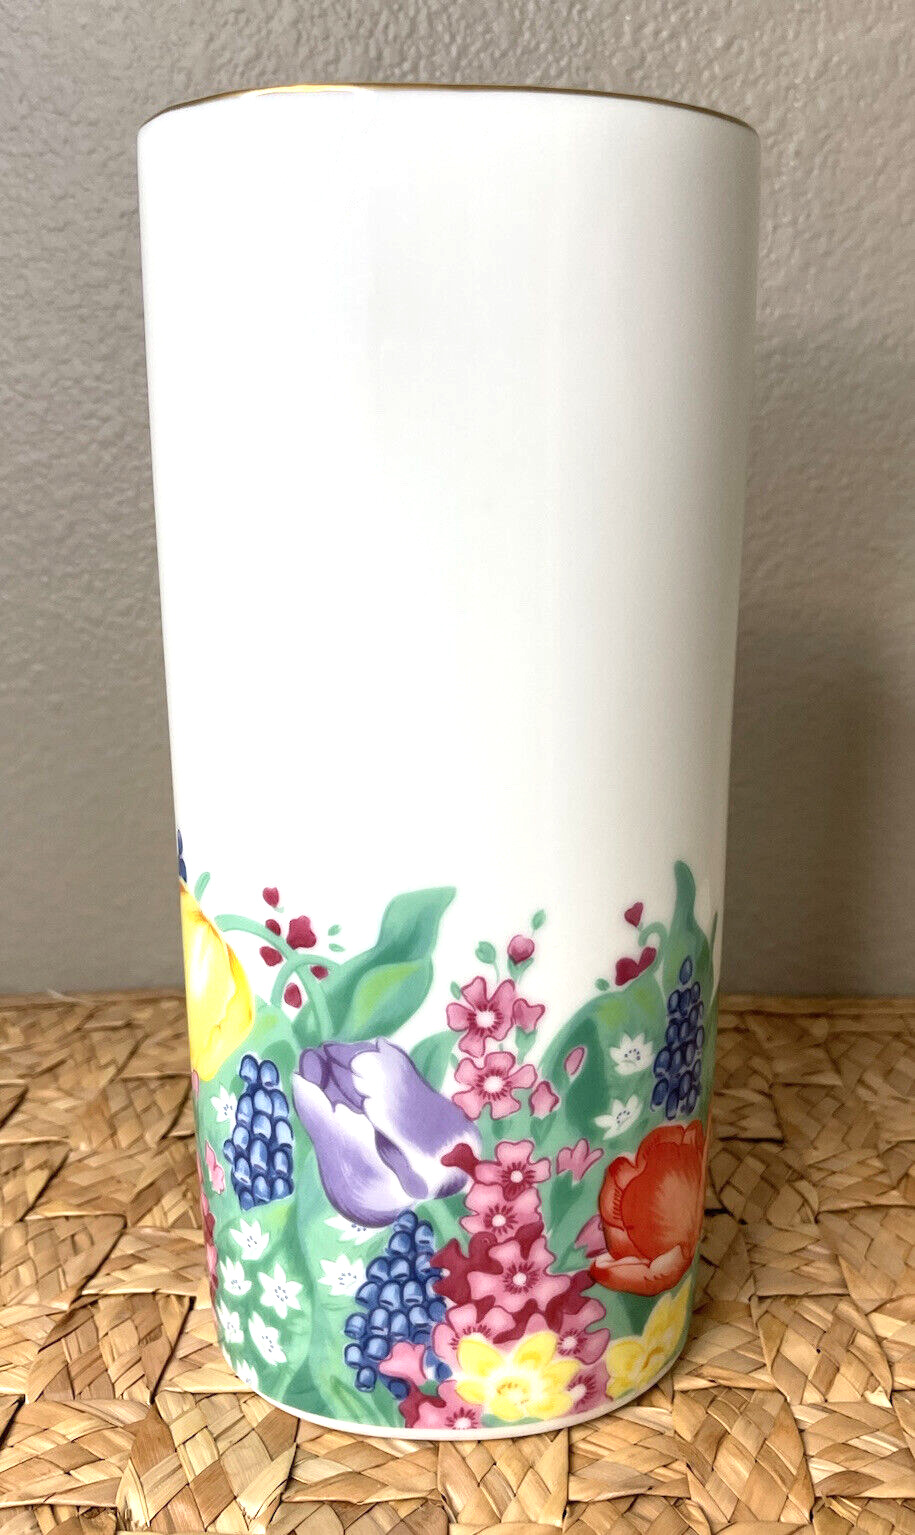 Otagiri Oval Vase Tulip Garden Elizabeth King Brownd Made In Japan Spring Floral